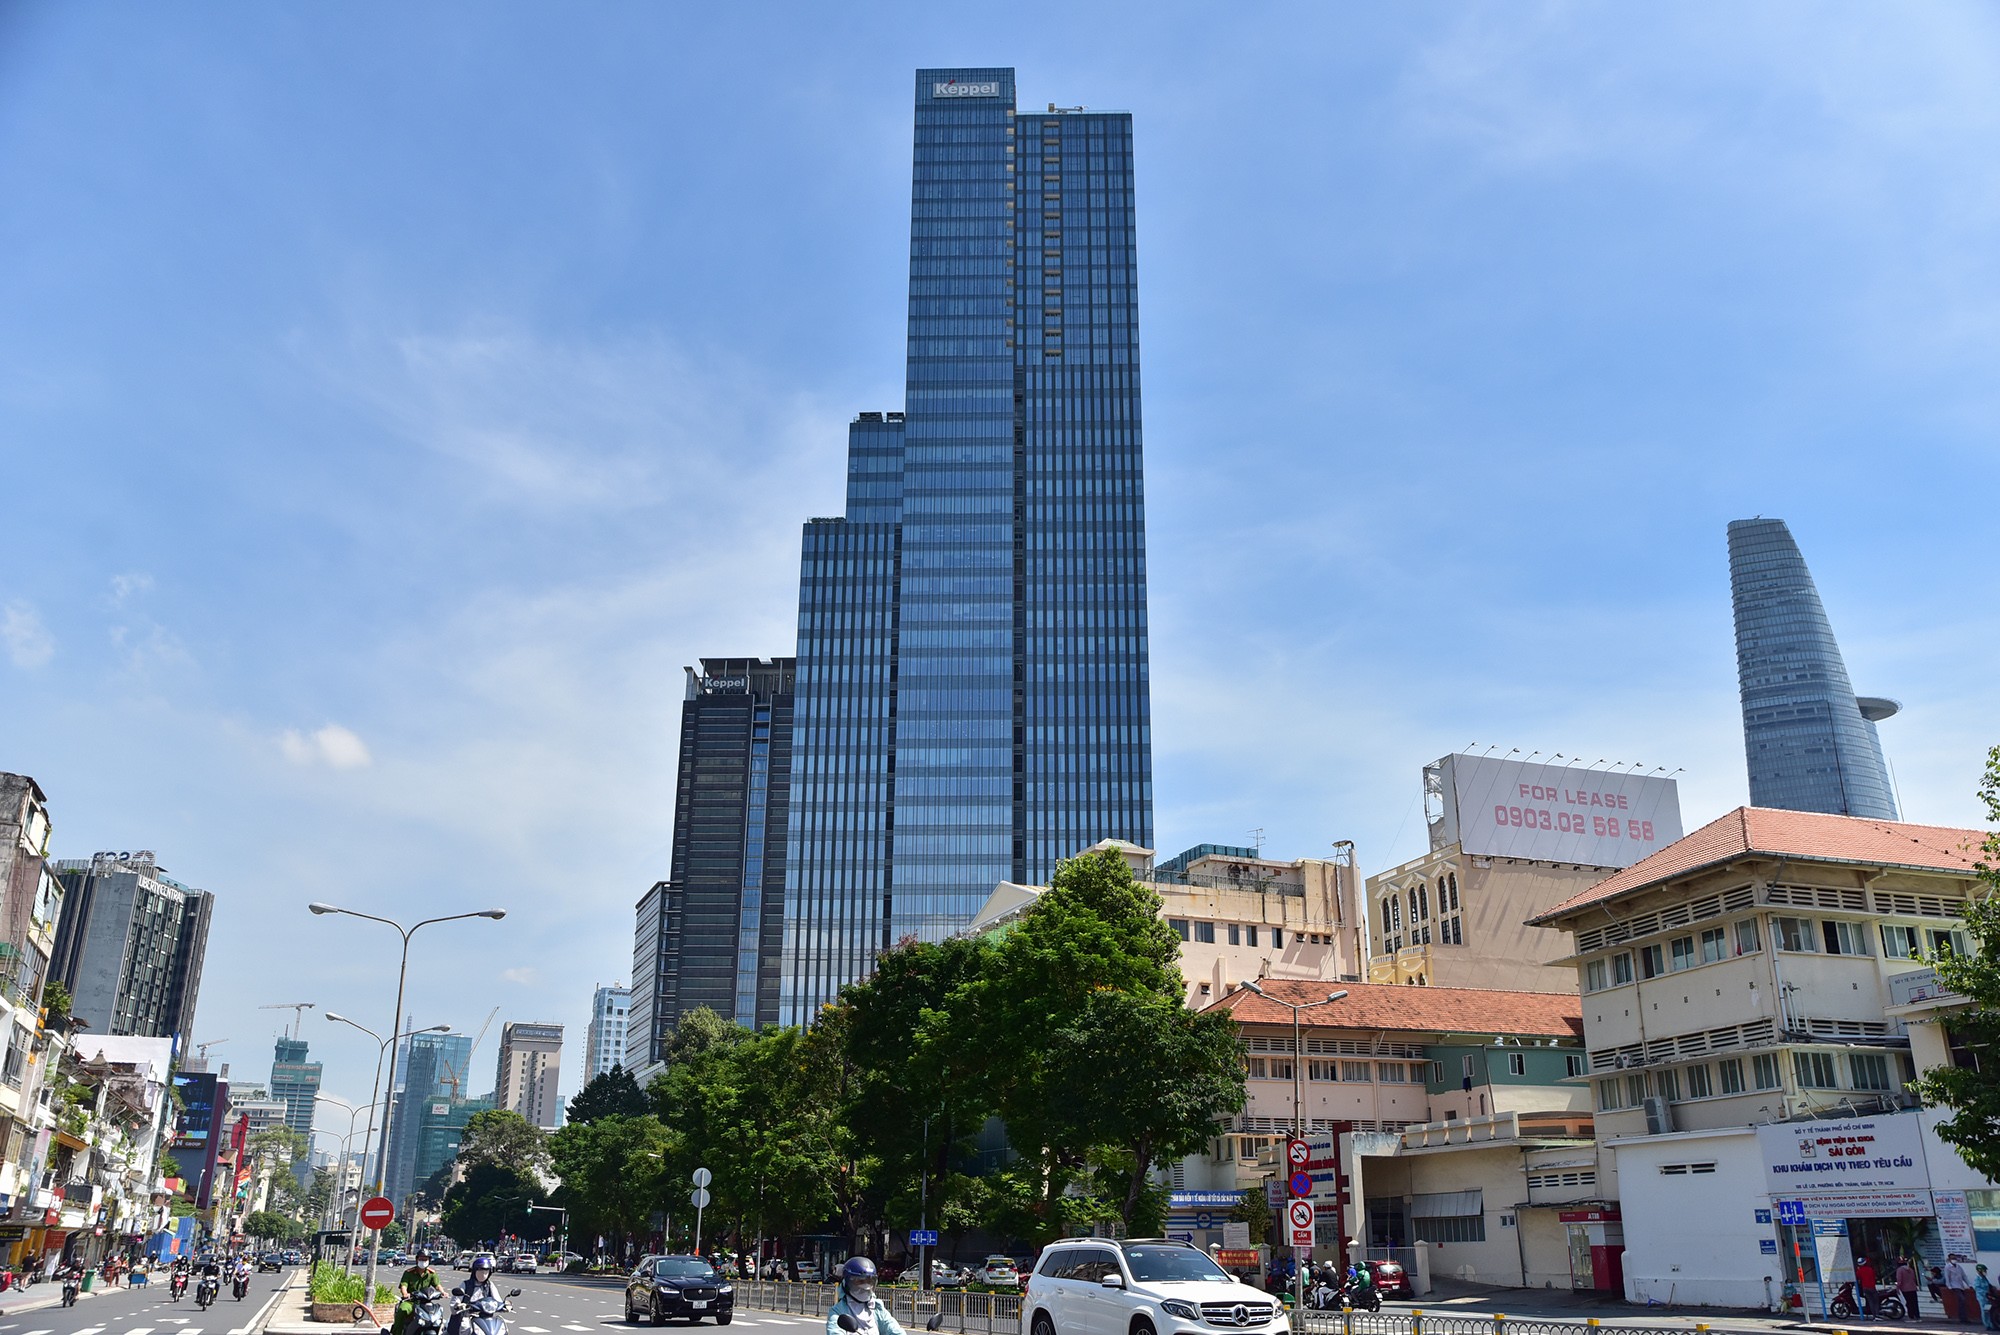 Nằm ở khu vực sầm uất của trung tâm thành phố, Saigon Centre 2 hoàn thành năm 2017 có chức năng là tổ hợp khu mua sắm, thương mại, ẩm thực, văn phòng cho thuê, căn hộ dịch vụ cao cấp…